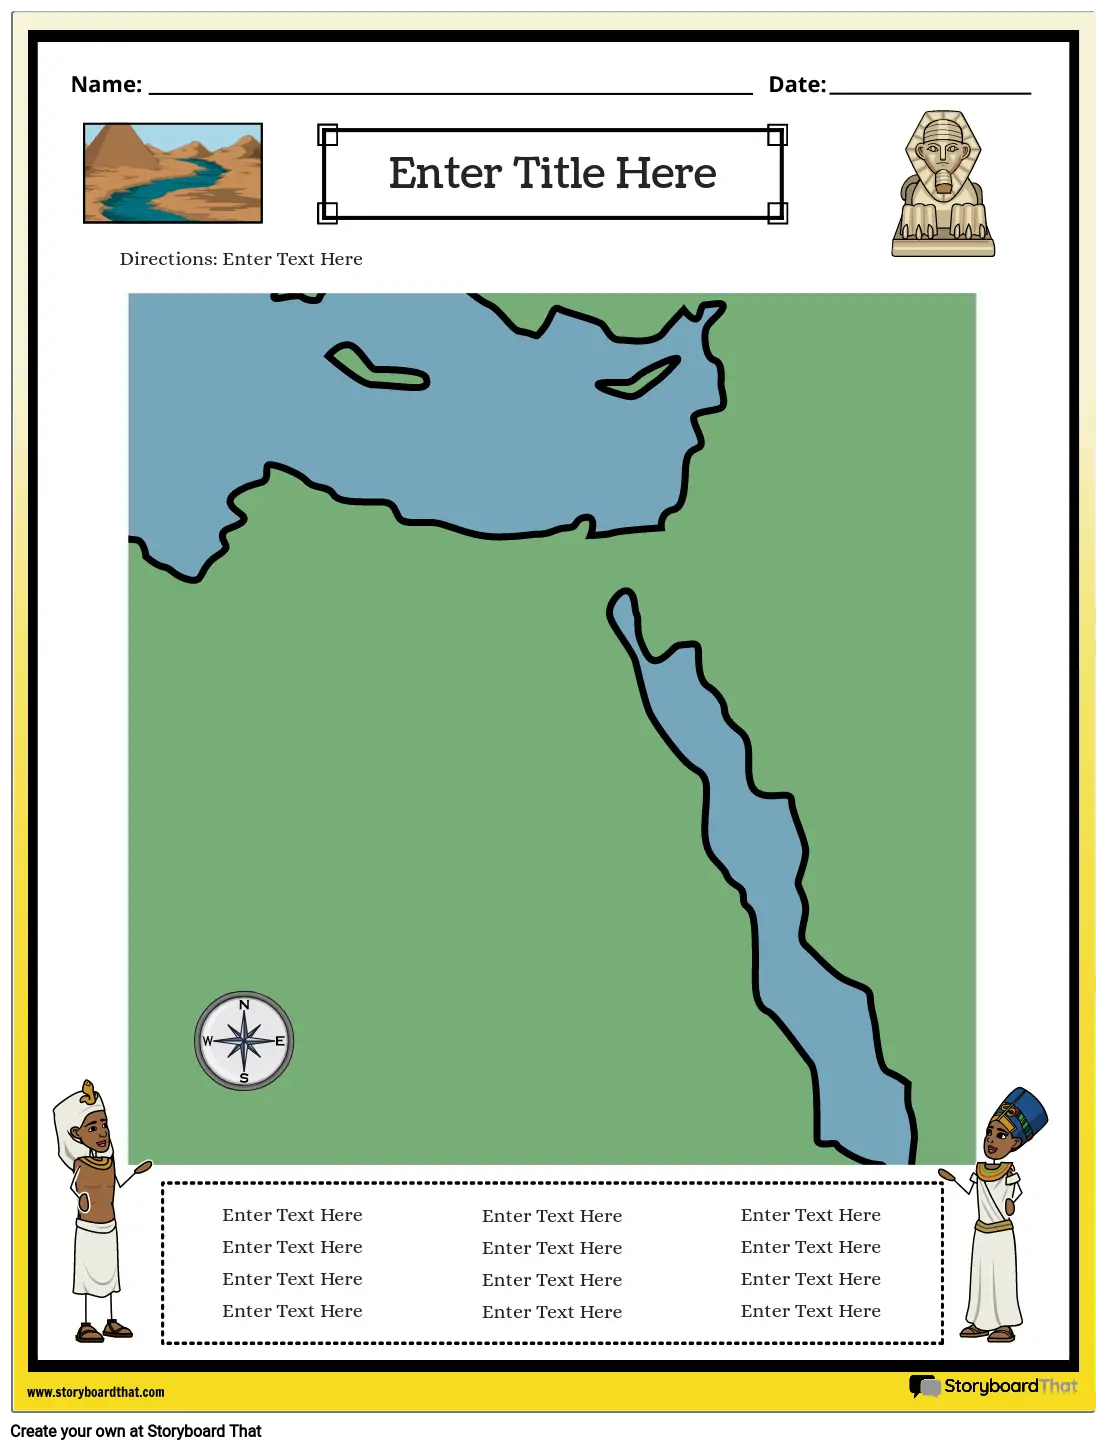 خريطة مصر القديمة